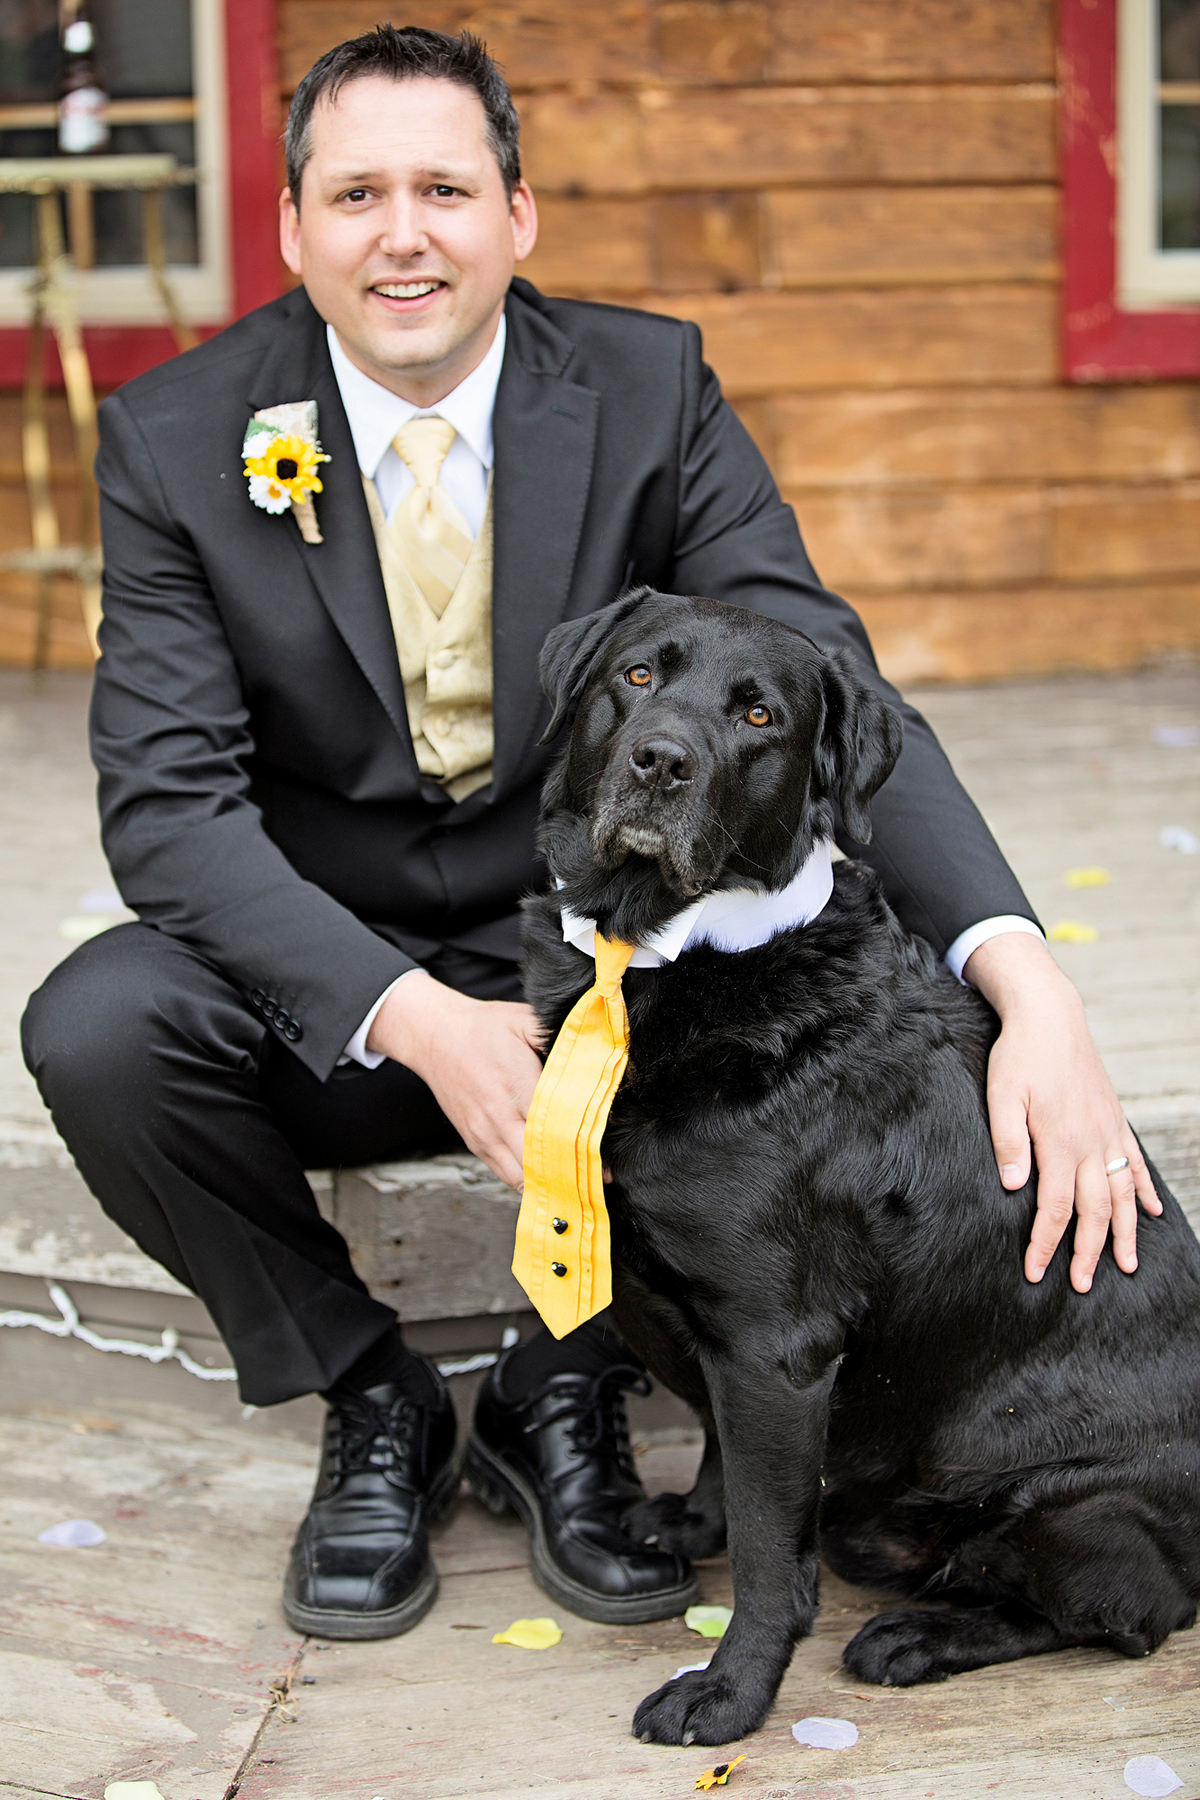  大切な愛犬に♡結婚式にぴったりなドレスアップをする7つのアイデア　で紹介している画像